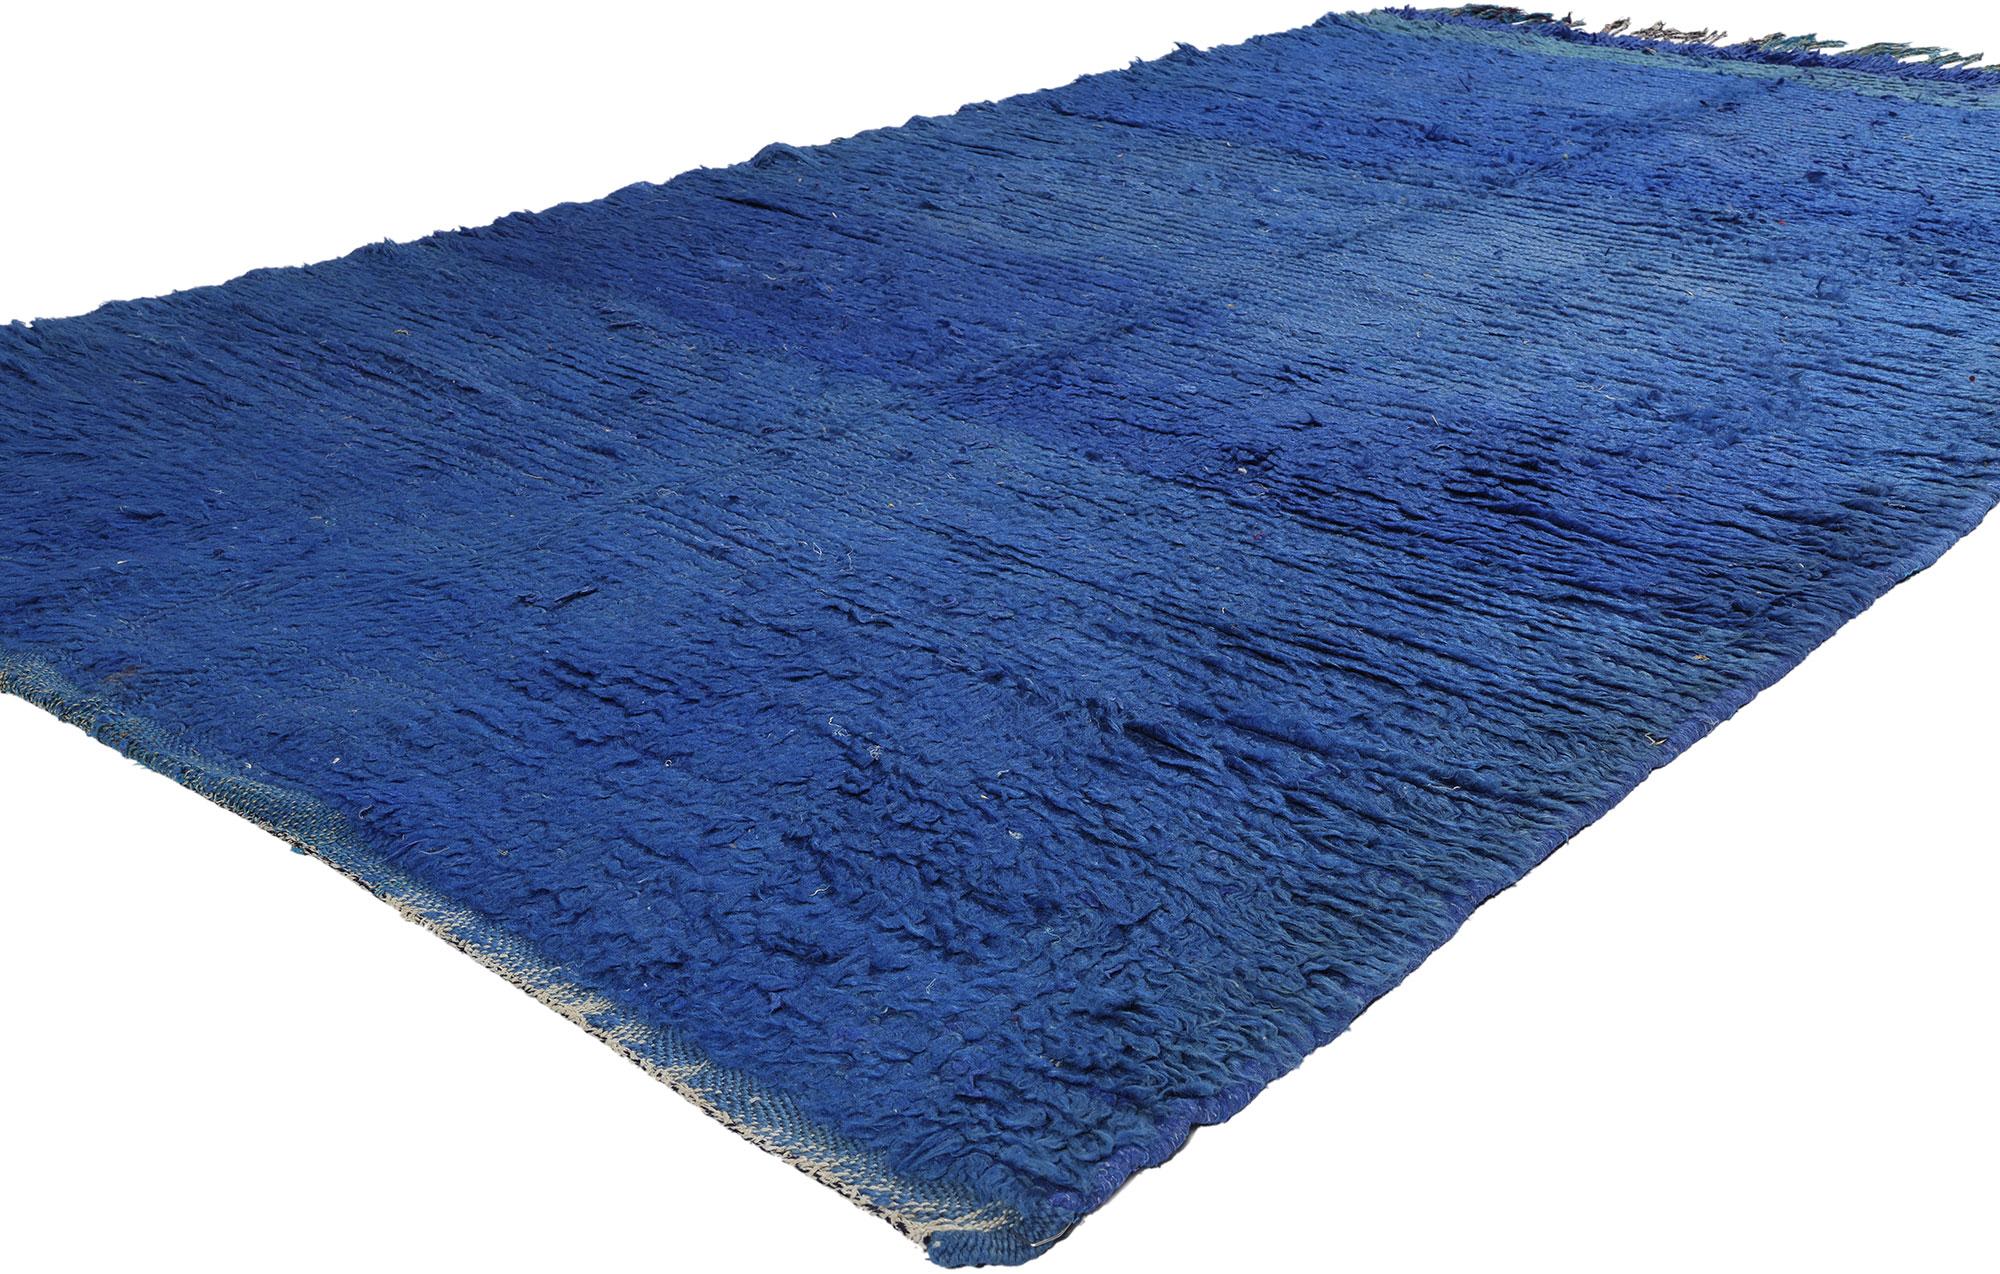 21773 Vintage Blue Beni Mrirt Marokkanischer Teppich, 04'09 x 08'05. Beni Mrirt-Teppiche repräsentieren die geschätzte Tradition der marokkanischen Weberei, die für ihre luxuriöse Textur, geometrischen Muster und ruhigen Erdtöne bekannt ist. Diese